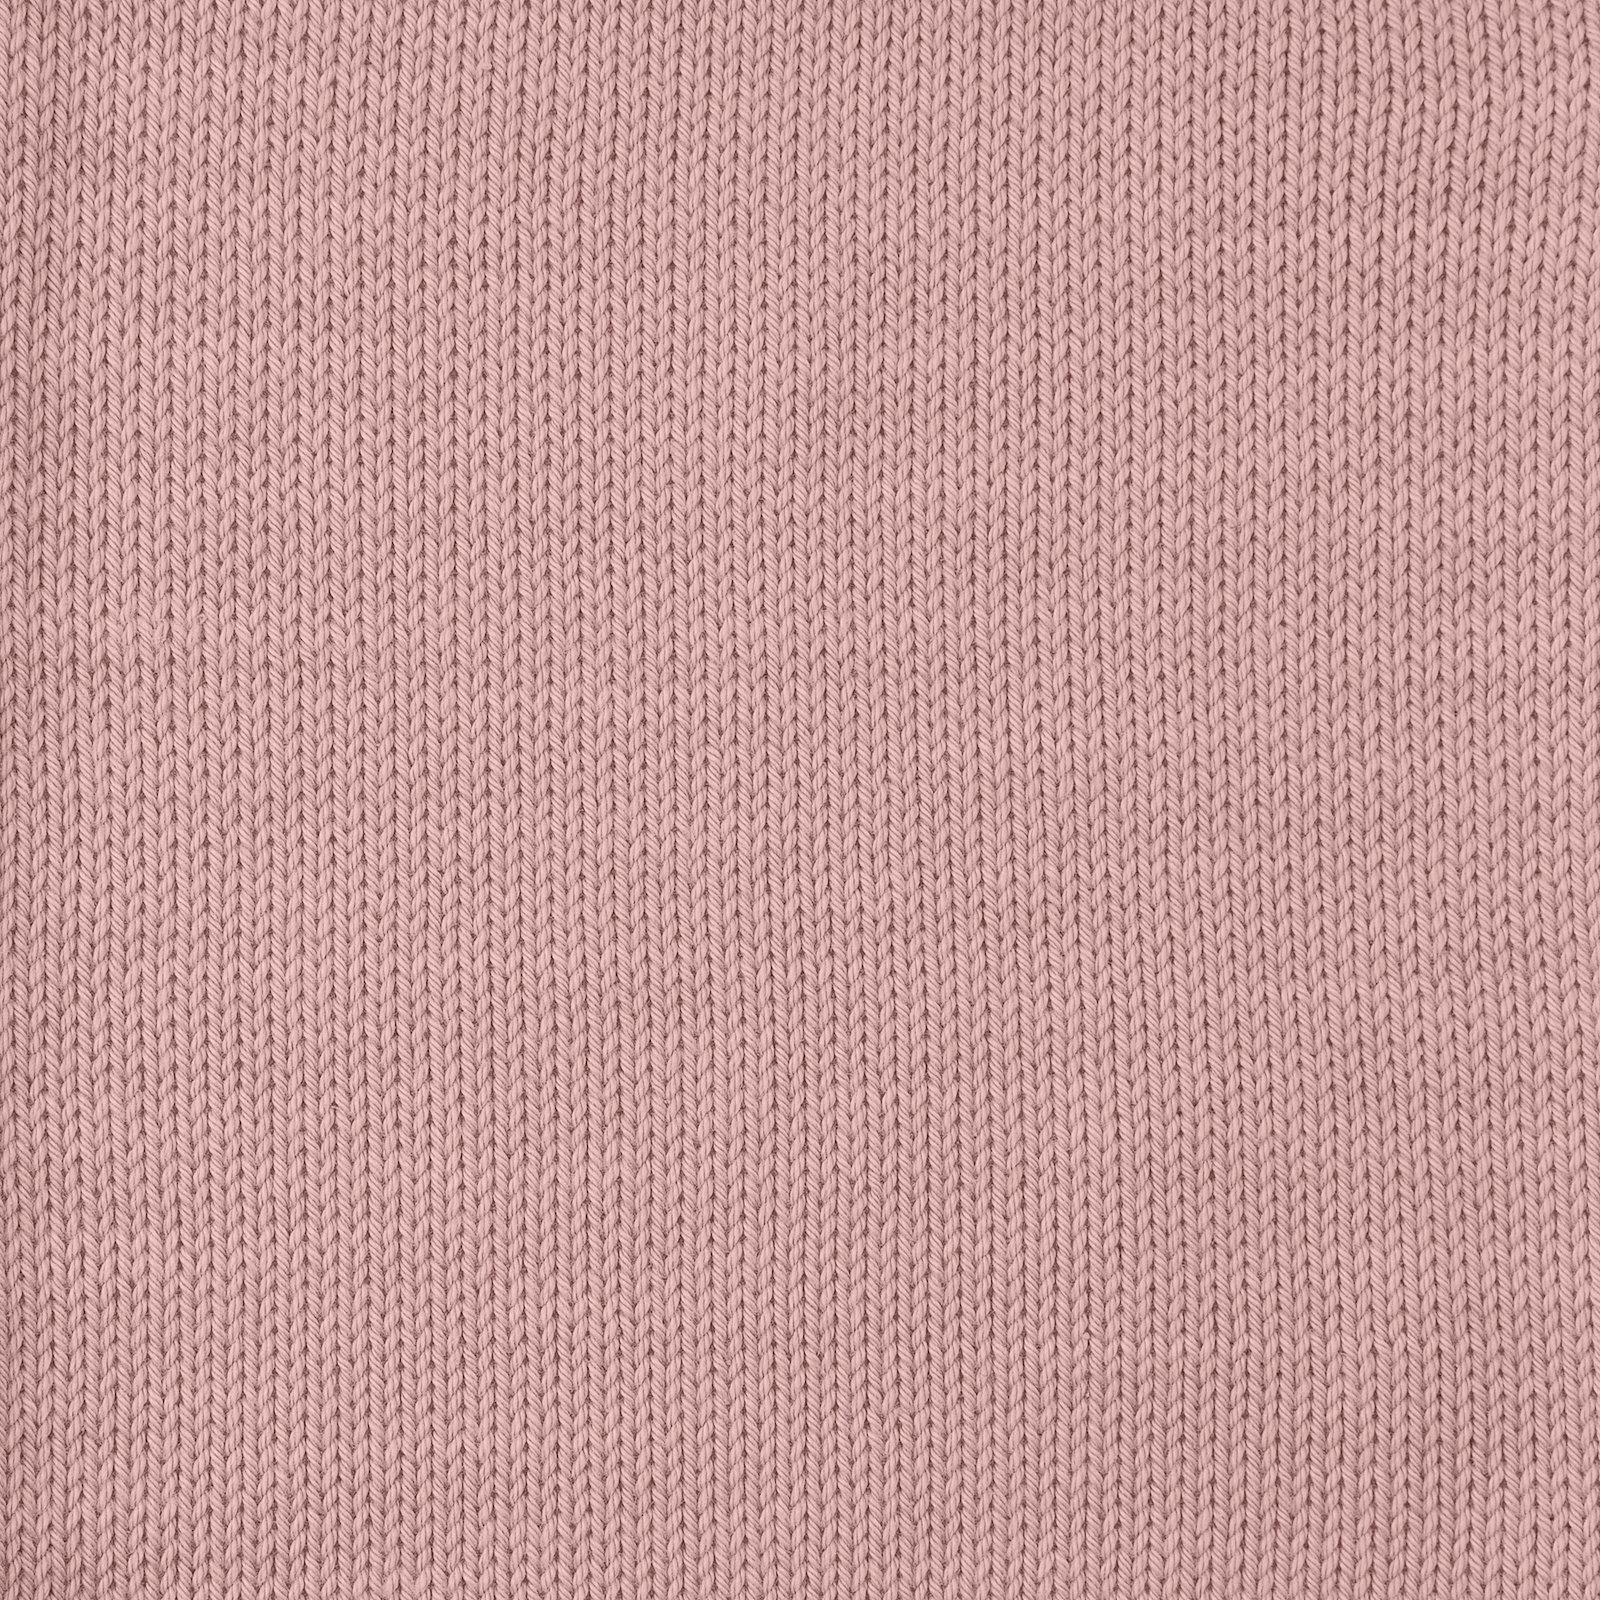 FRAYA, 100% cotton 8/4  yarn  "Colourful", peach 90060059_sskit